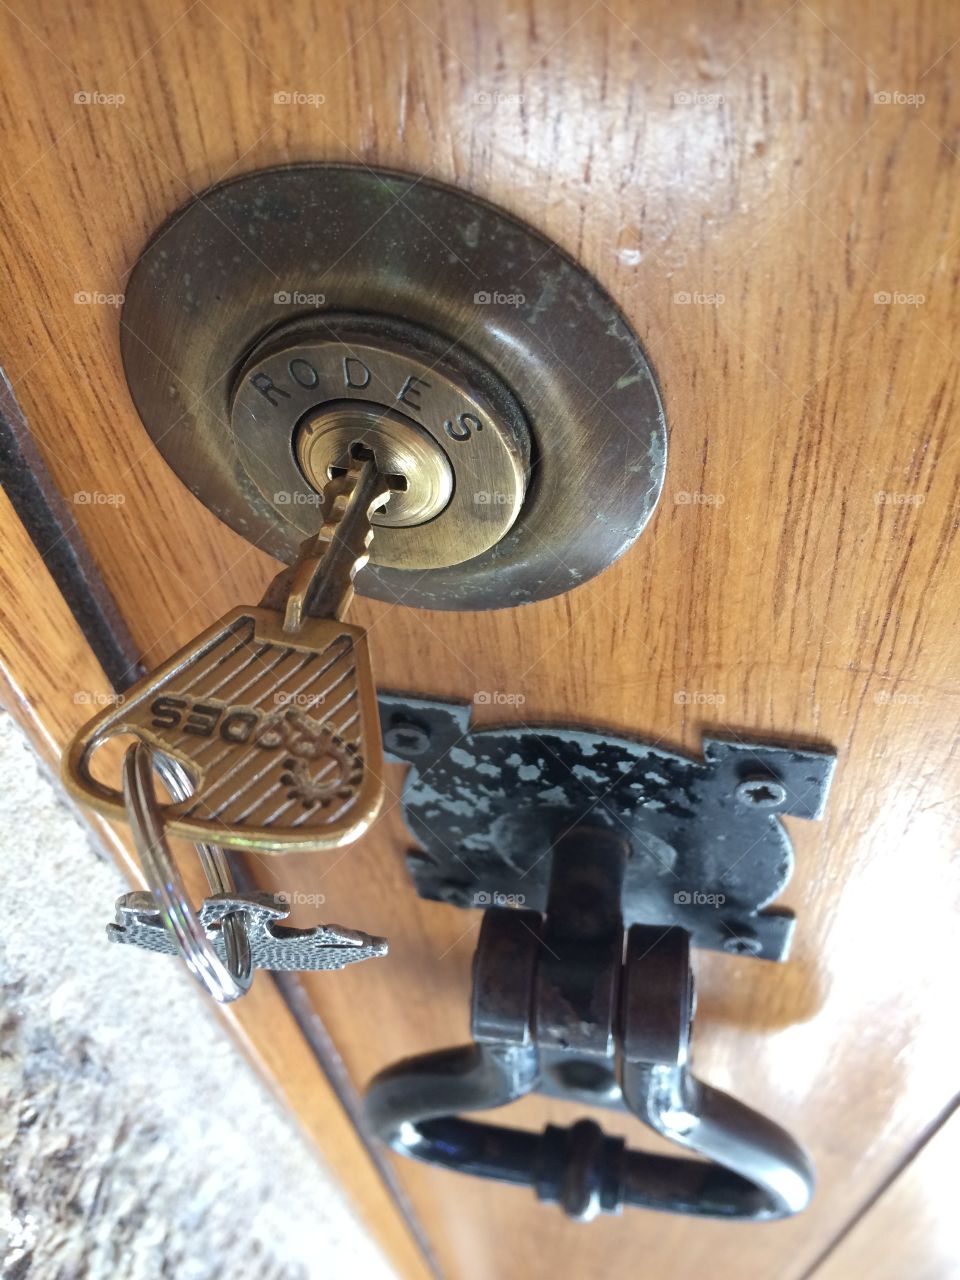 Key in the door lock